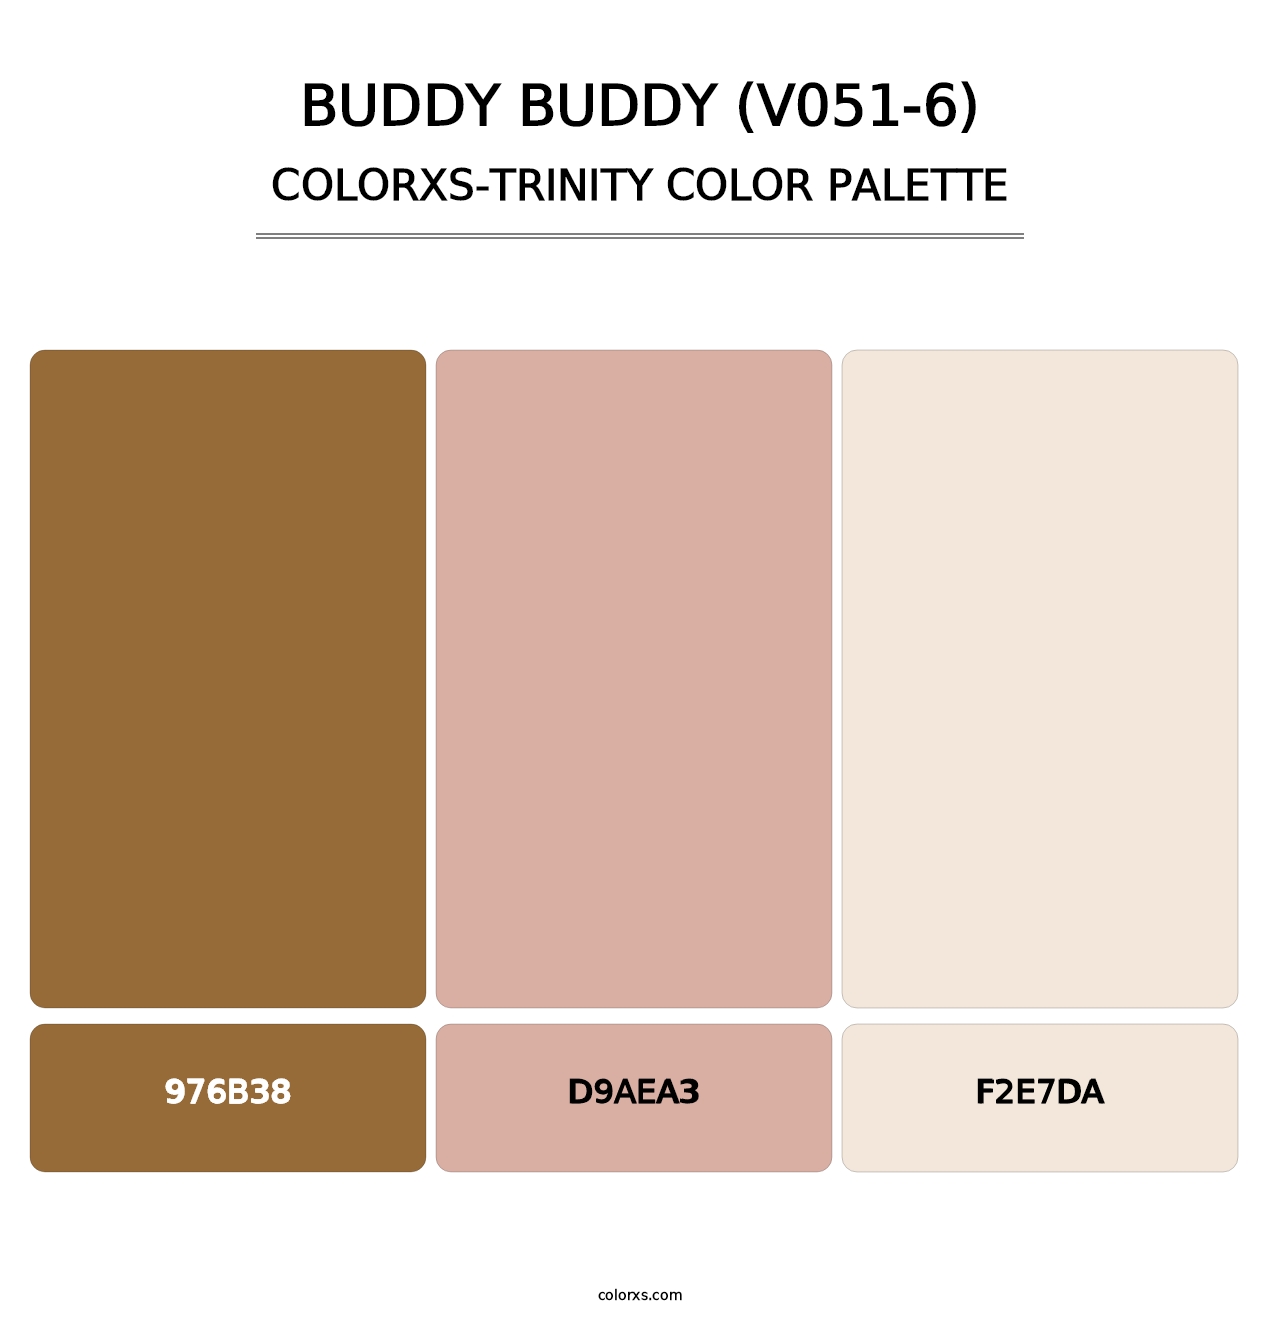 Buddy Buddy (V051-6) - Colorxs Trinity Palette